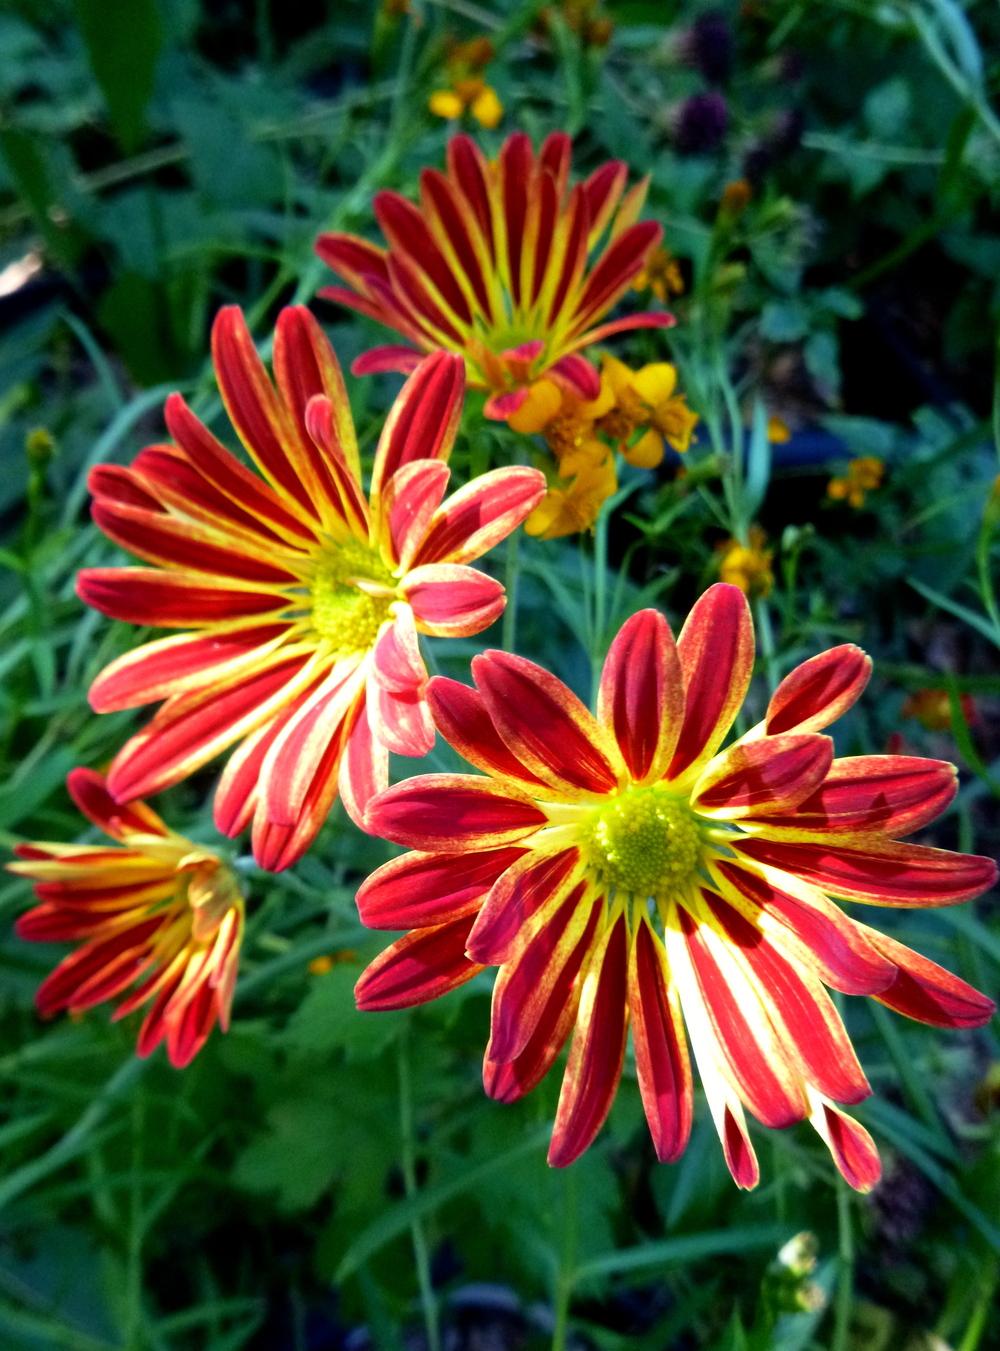 Photo of Florist Mum (Chrysanthemum Point Pelee™) uploaded by scvirginia